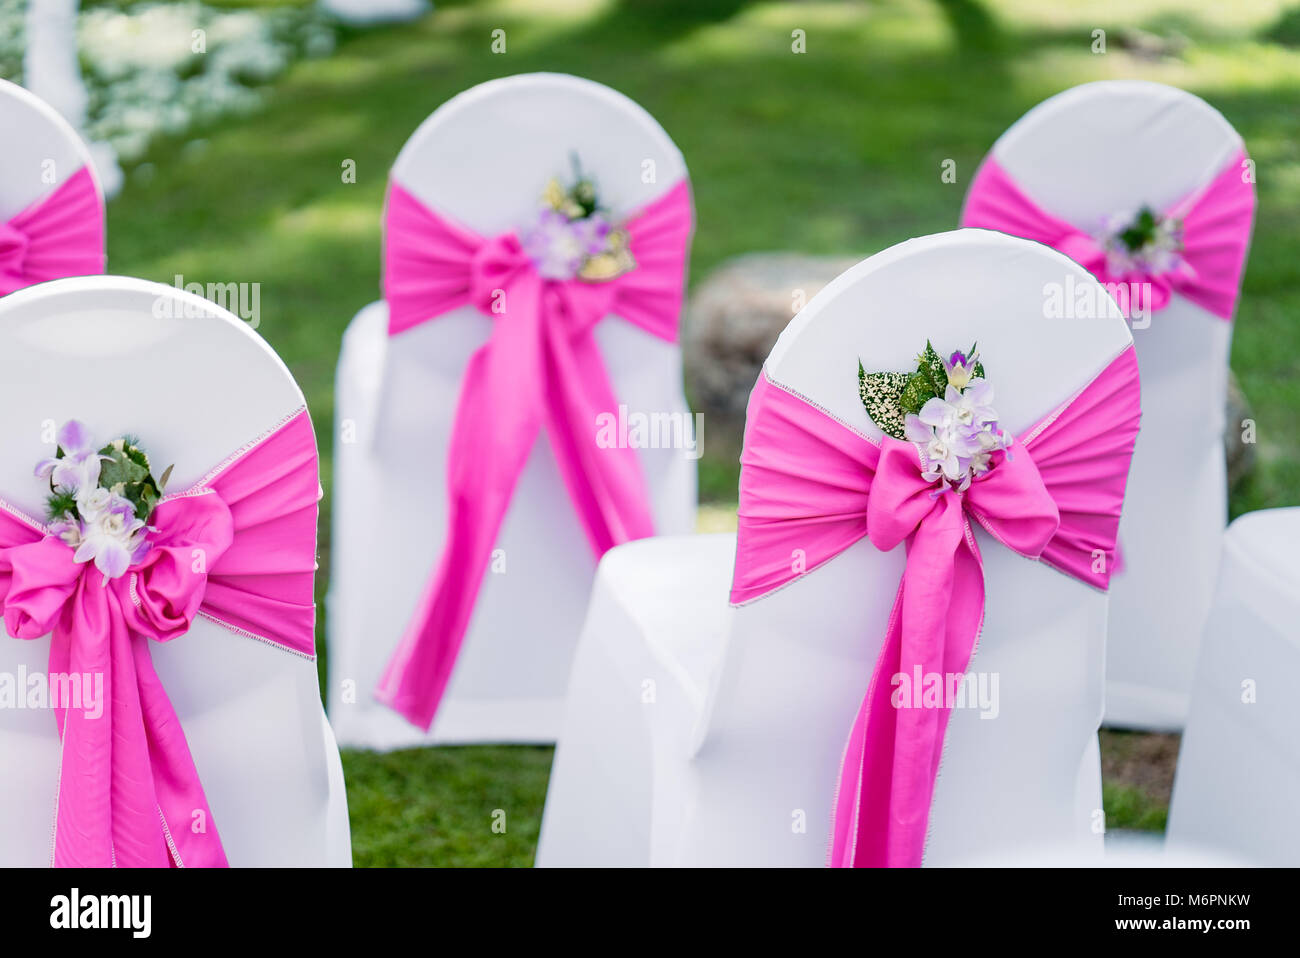 El dorso de spandex blanco preside la cubierta con guillotina de organza rosa con conos de pétalos de rosas Foto de stock